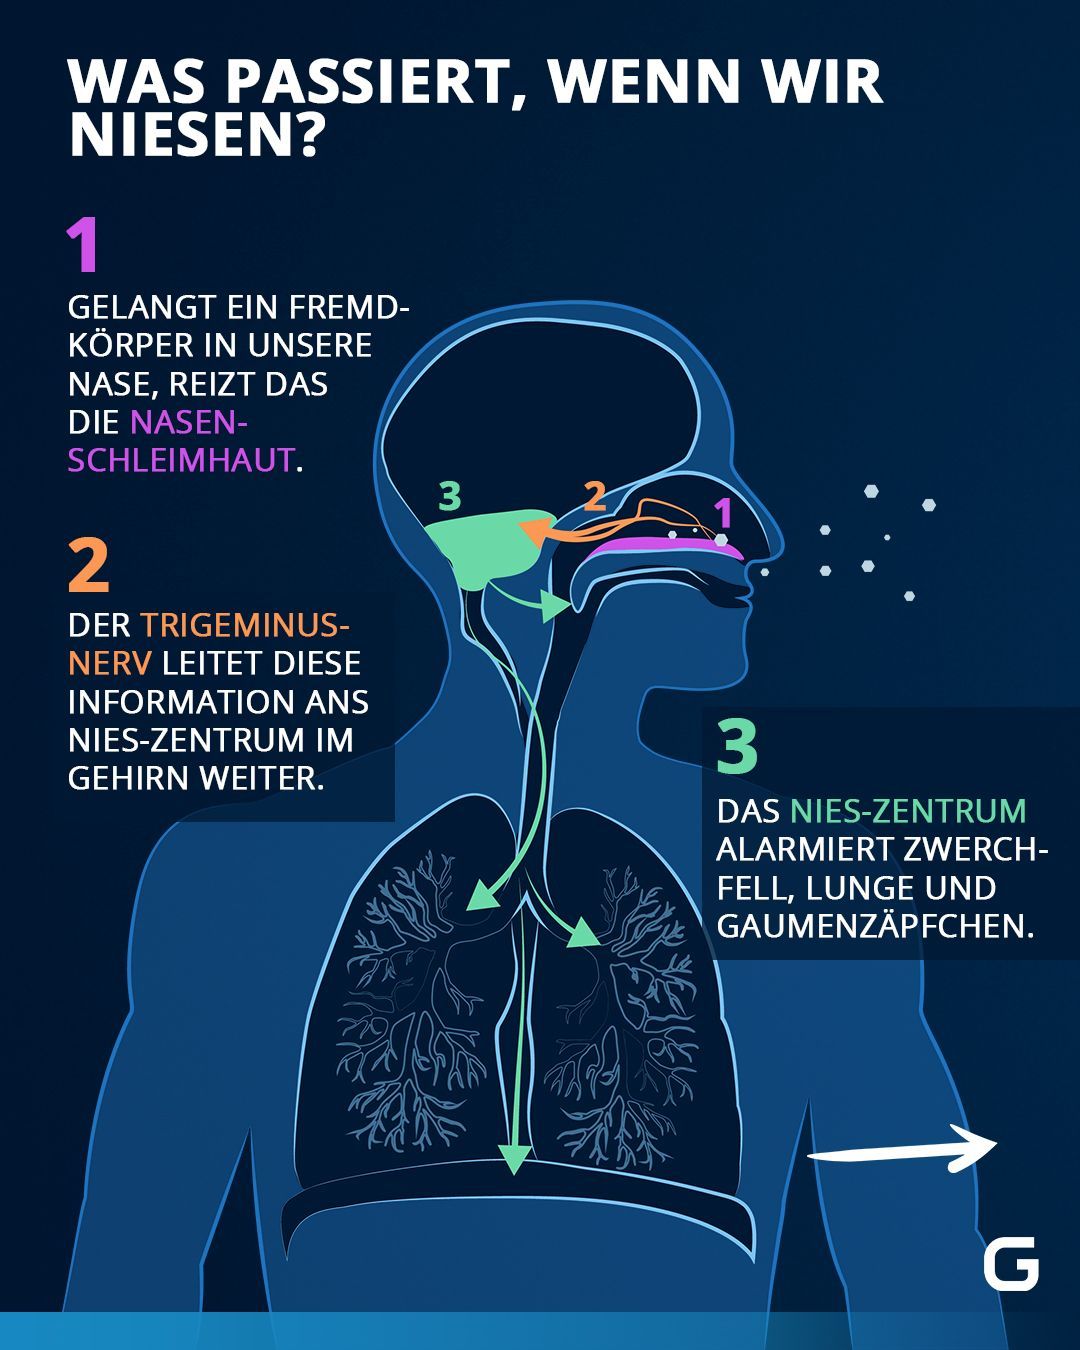 Was passiert, wenn wir niesen?